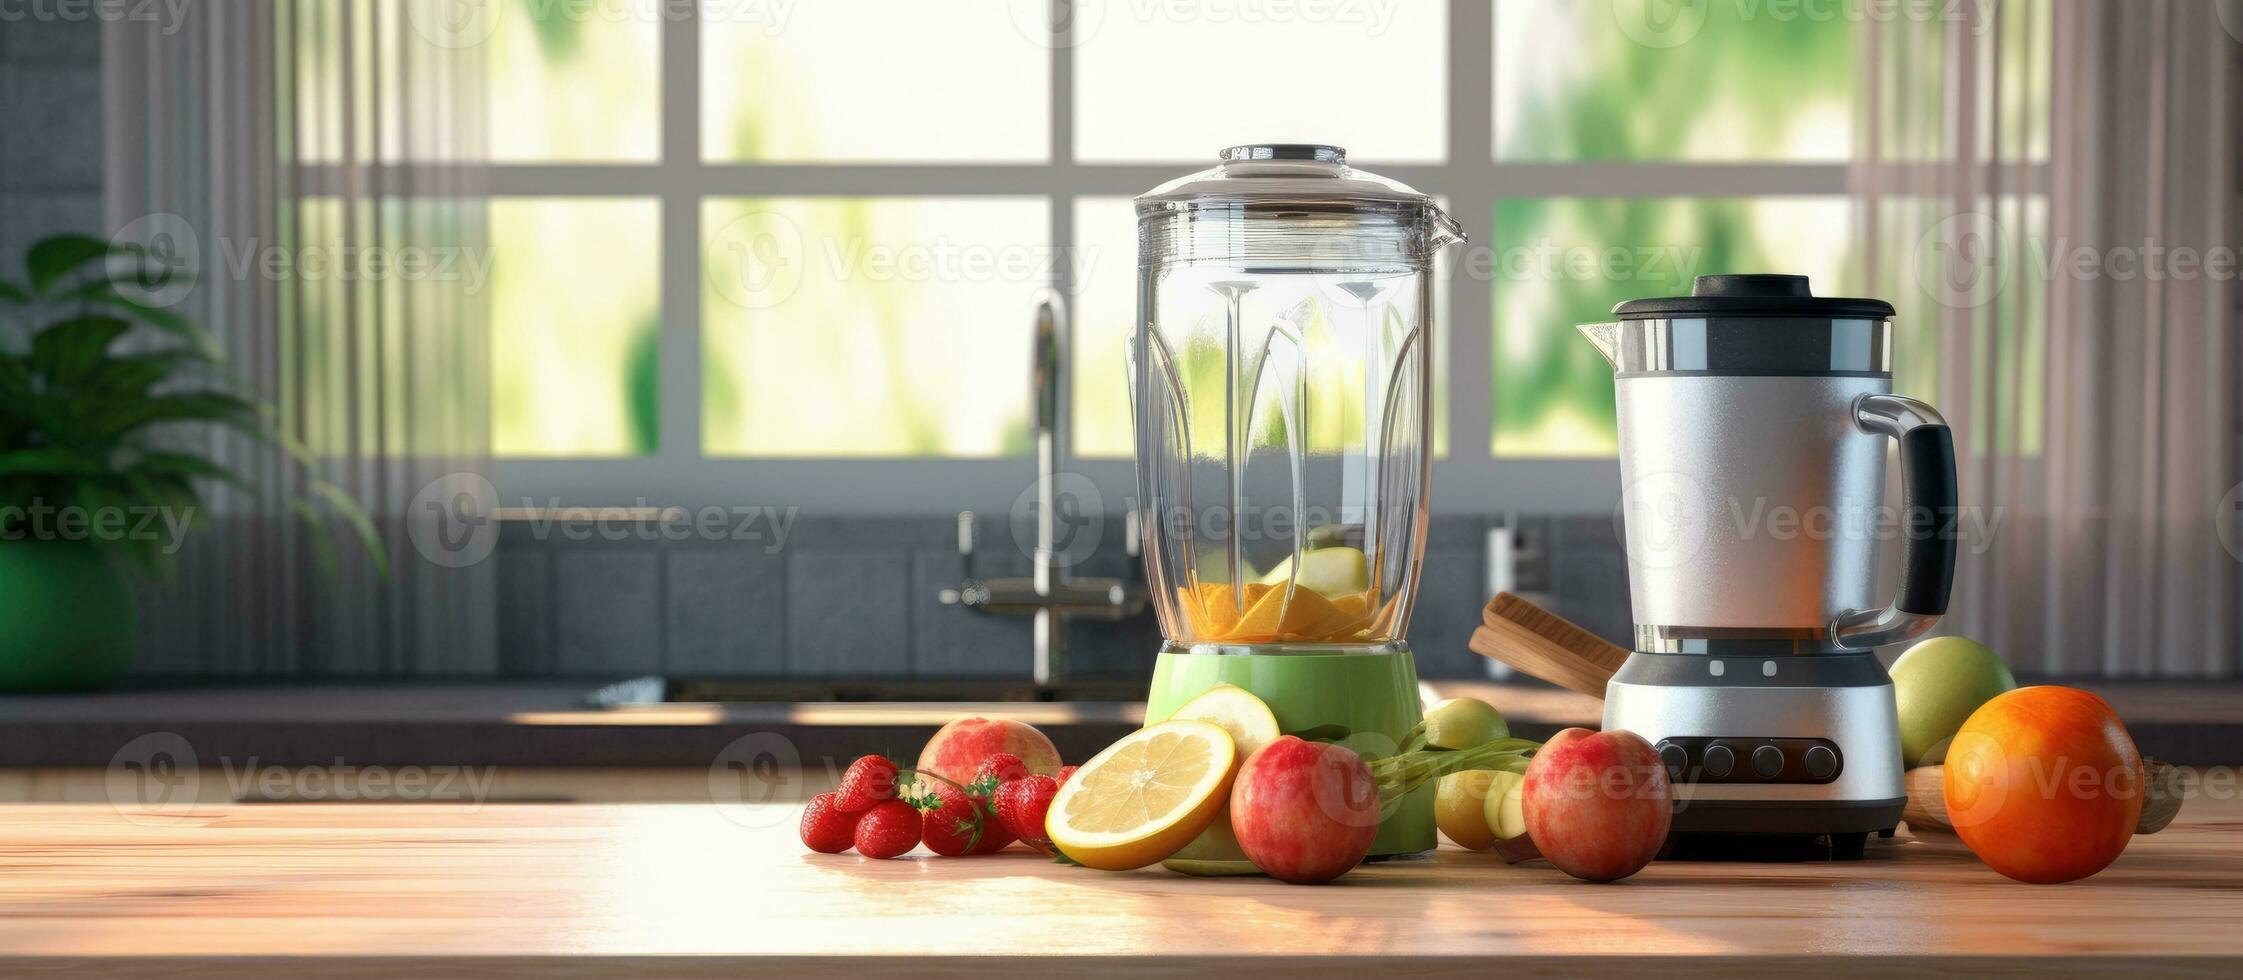 Contexte image de chrome mixeur sur cuisine compteur avec des fruits, copie espace ultraréaliste photo. photo